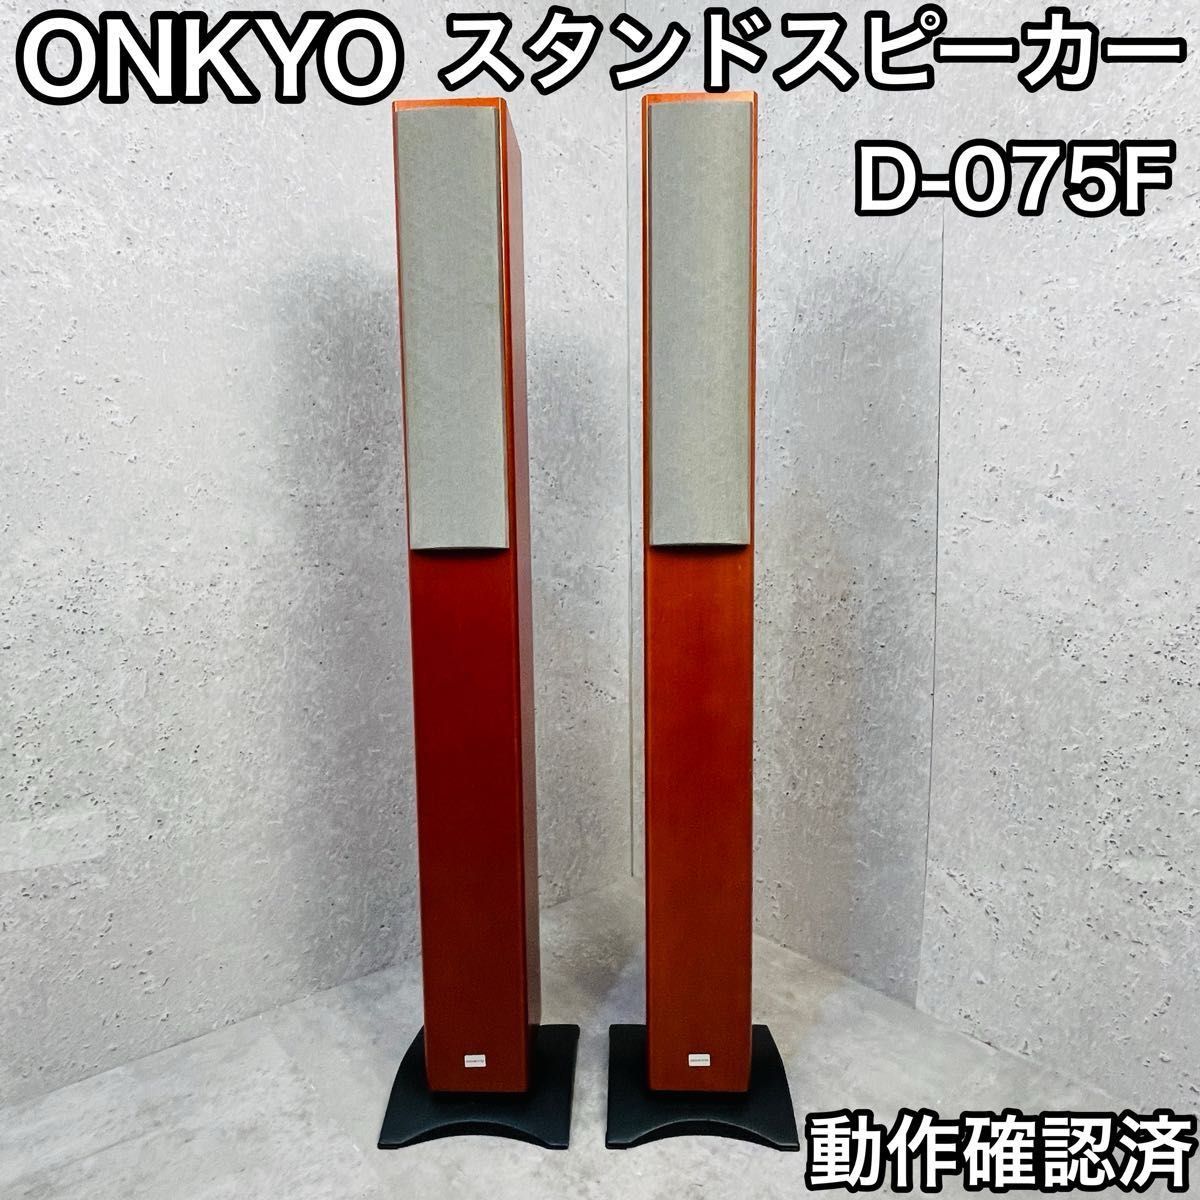 ONKYO トールボーイ型スピーカー D-057F ペア 木目